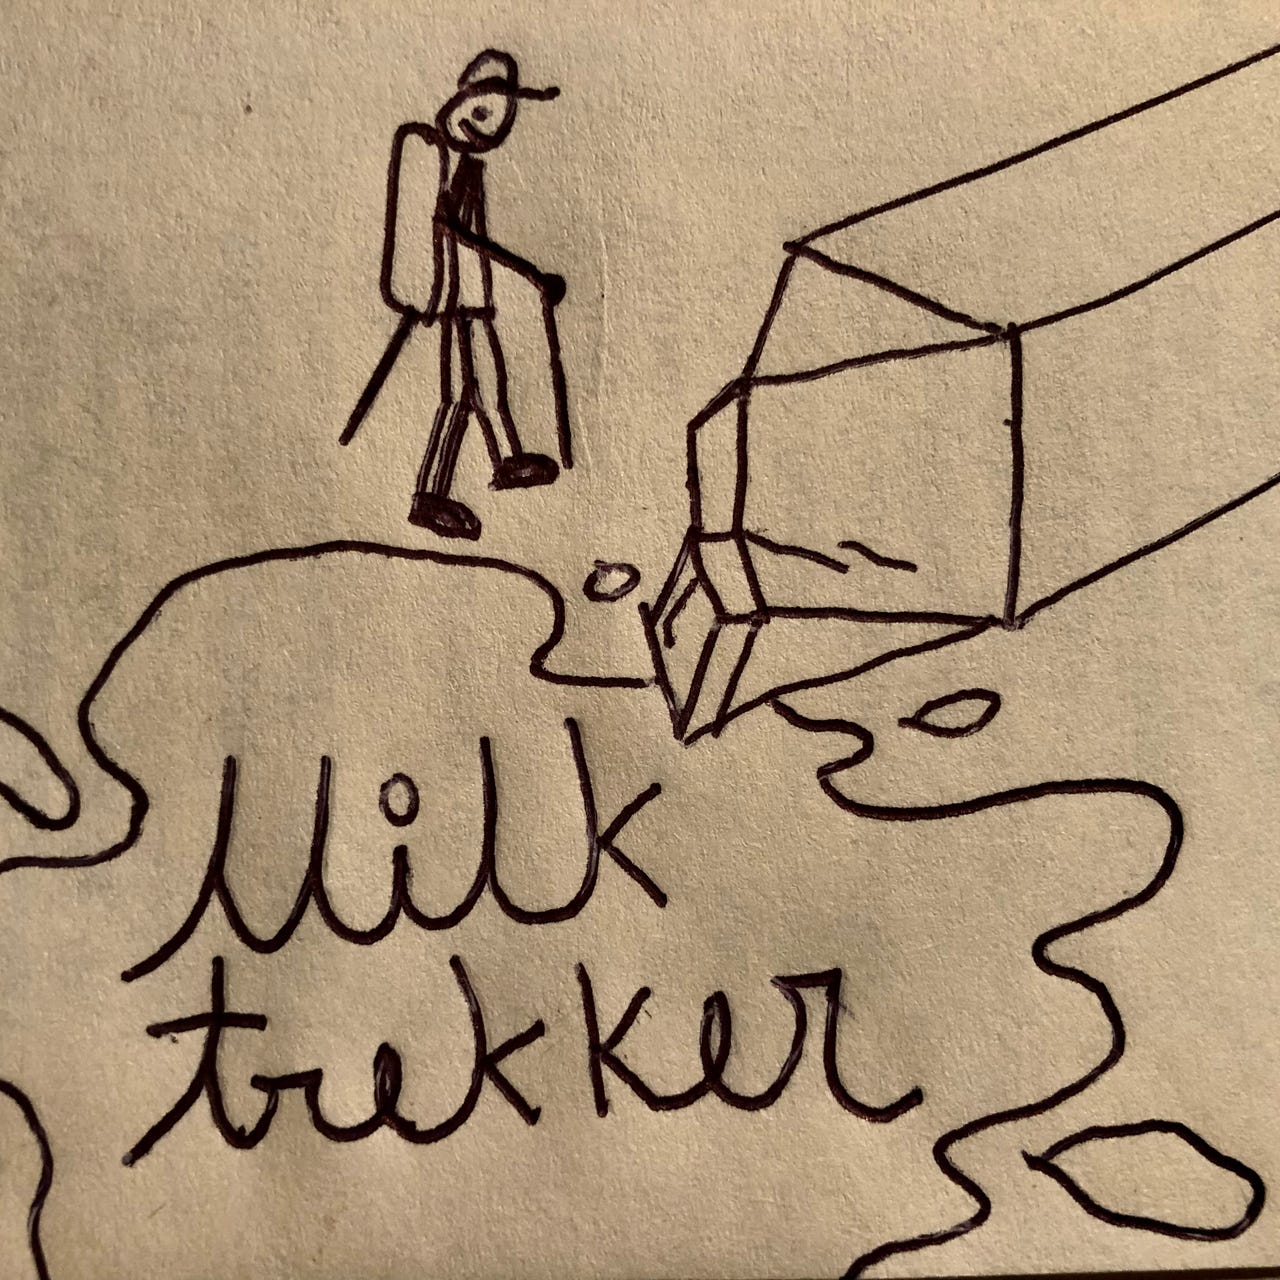 Artwork for Milk Trekker